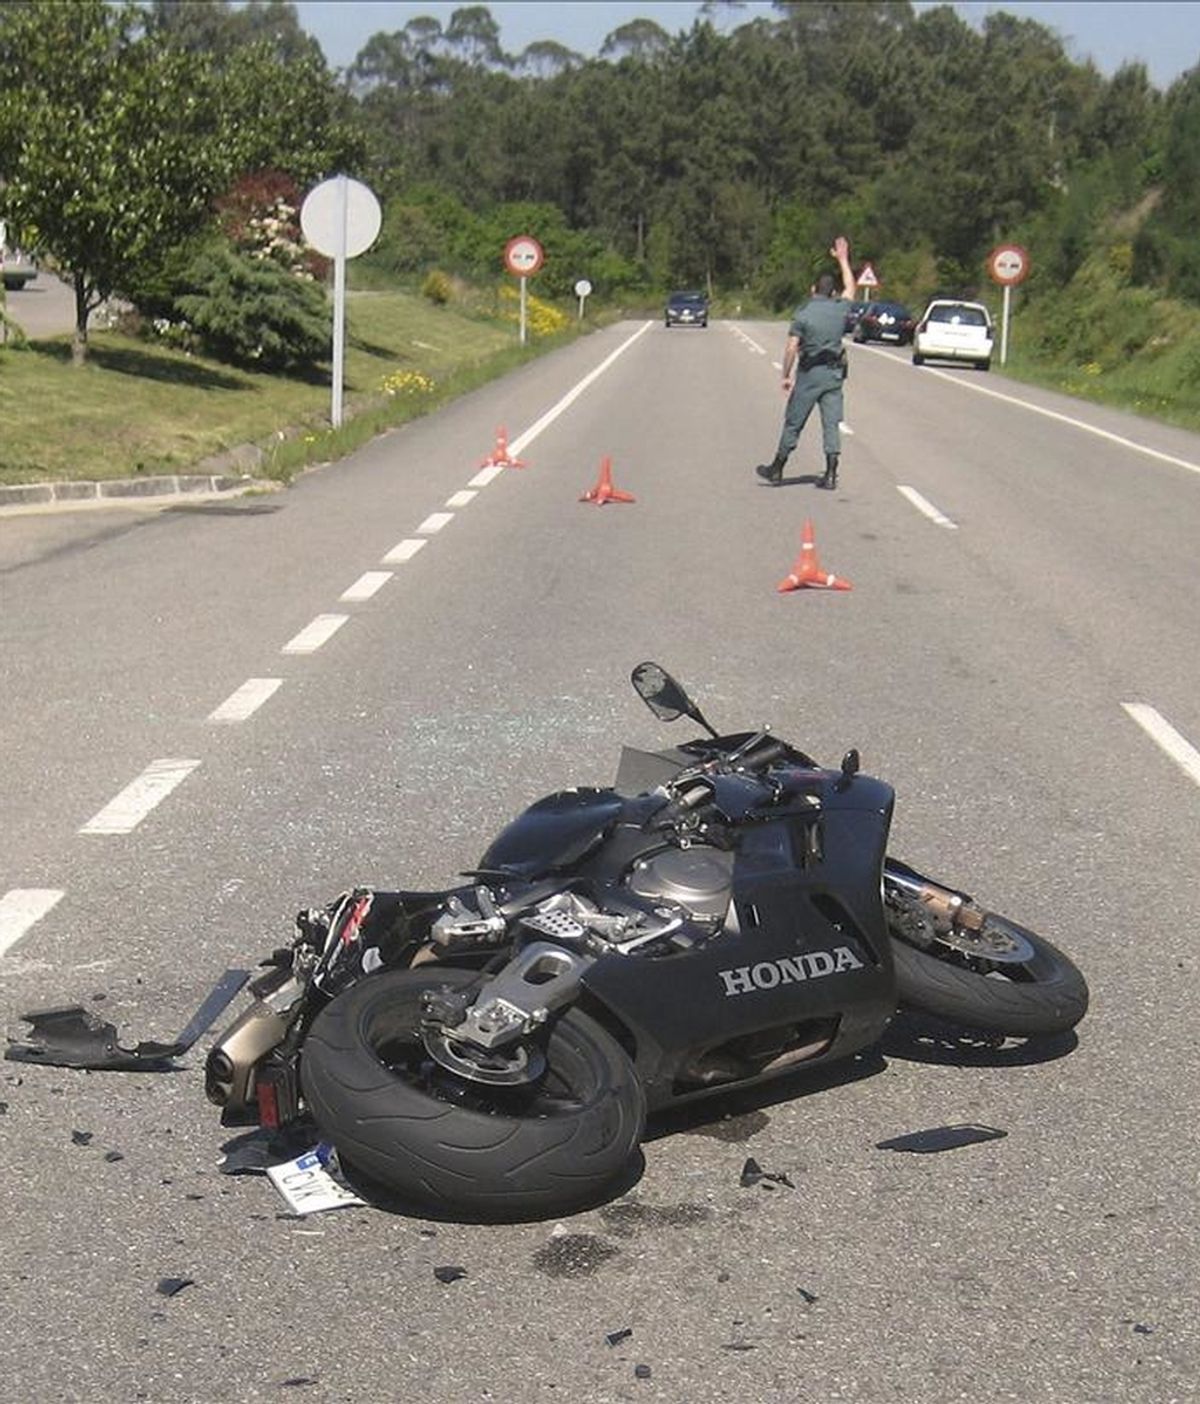 Un hombre de 36 años que conducía una motocicleta falleció ayer a consecuencia de un choque contra un coche que circulaba en sentido opuesto en una carretera pontevedresa. EFE